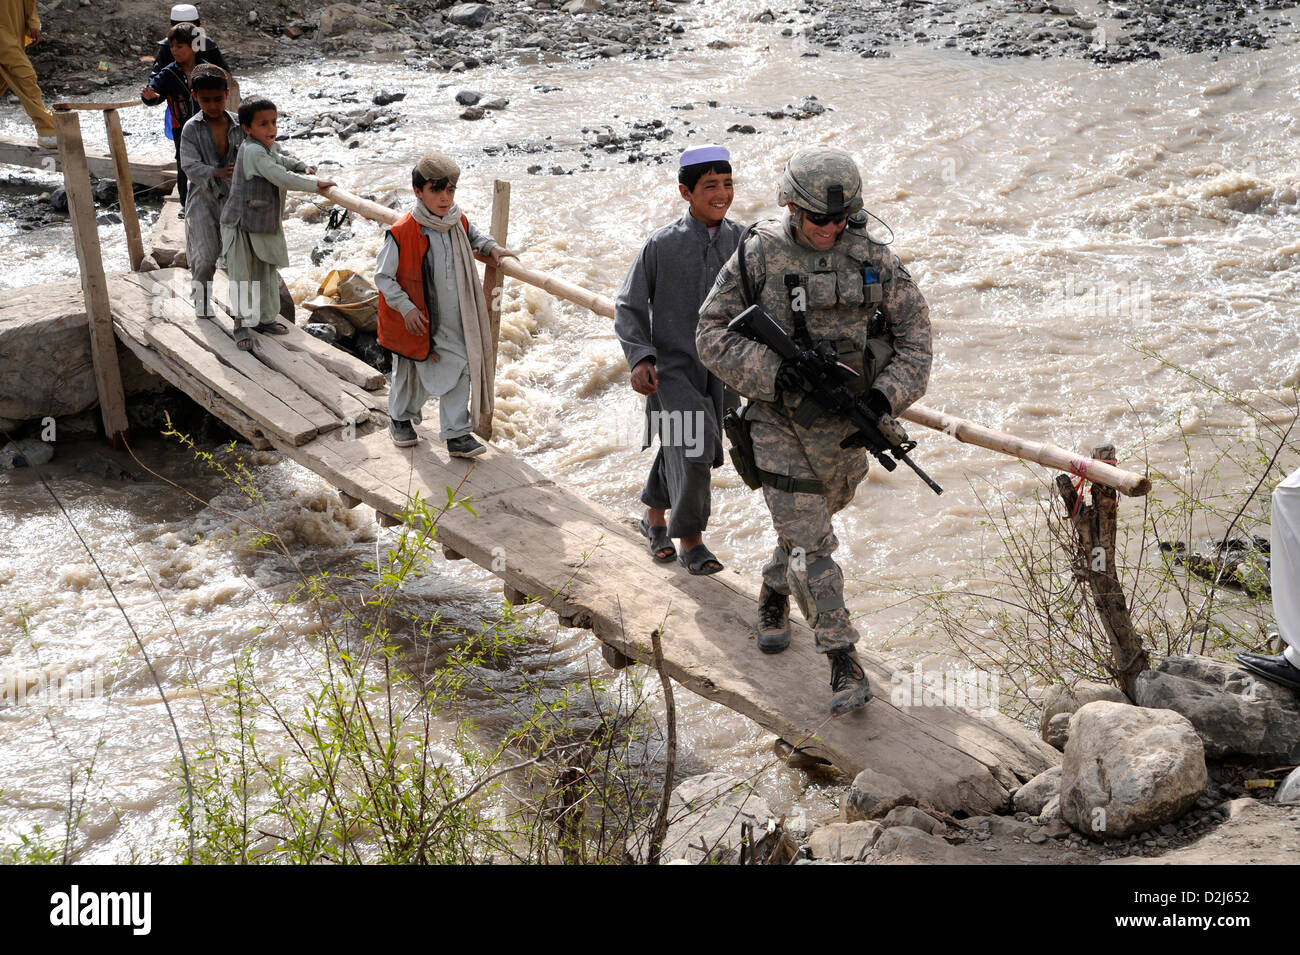 Los niños afganos siguen un soldado estadounidense a través de un puente en una aldea cerca de la base de operaciones avanzada Herrera, Afganistán, 18 de abril de 2009. Foto de stock